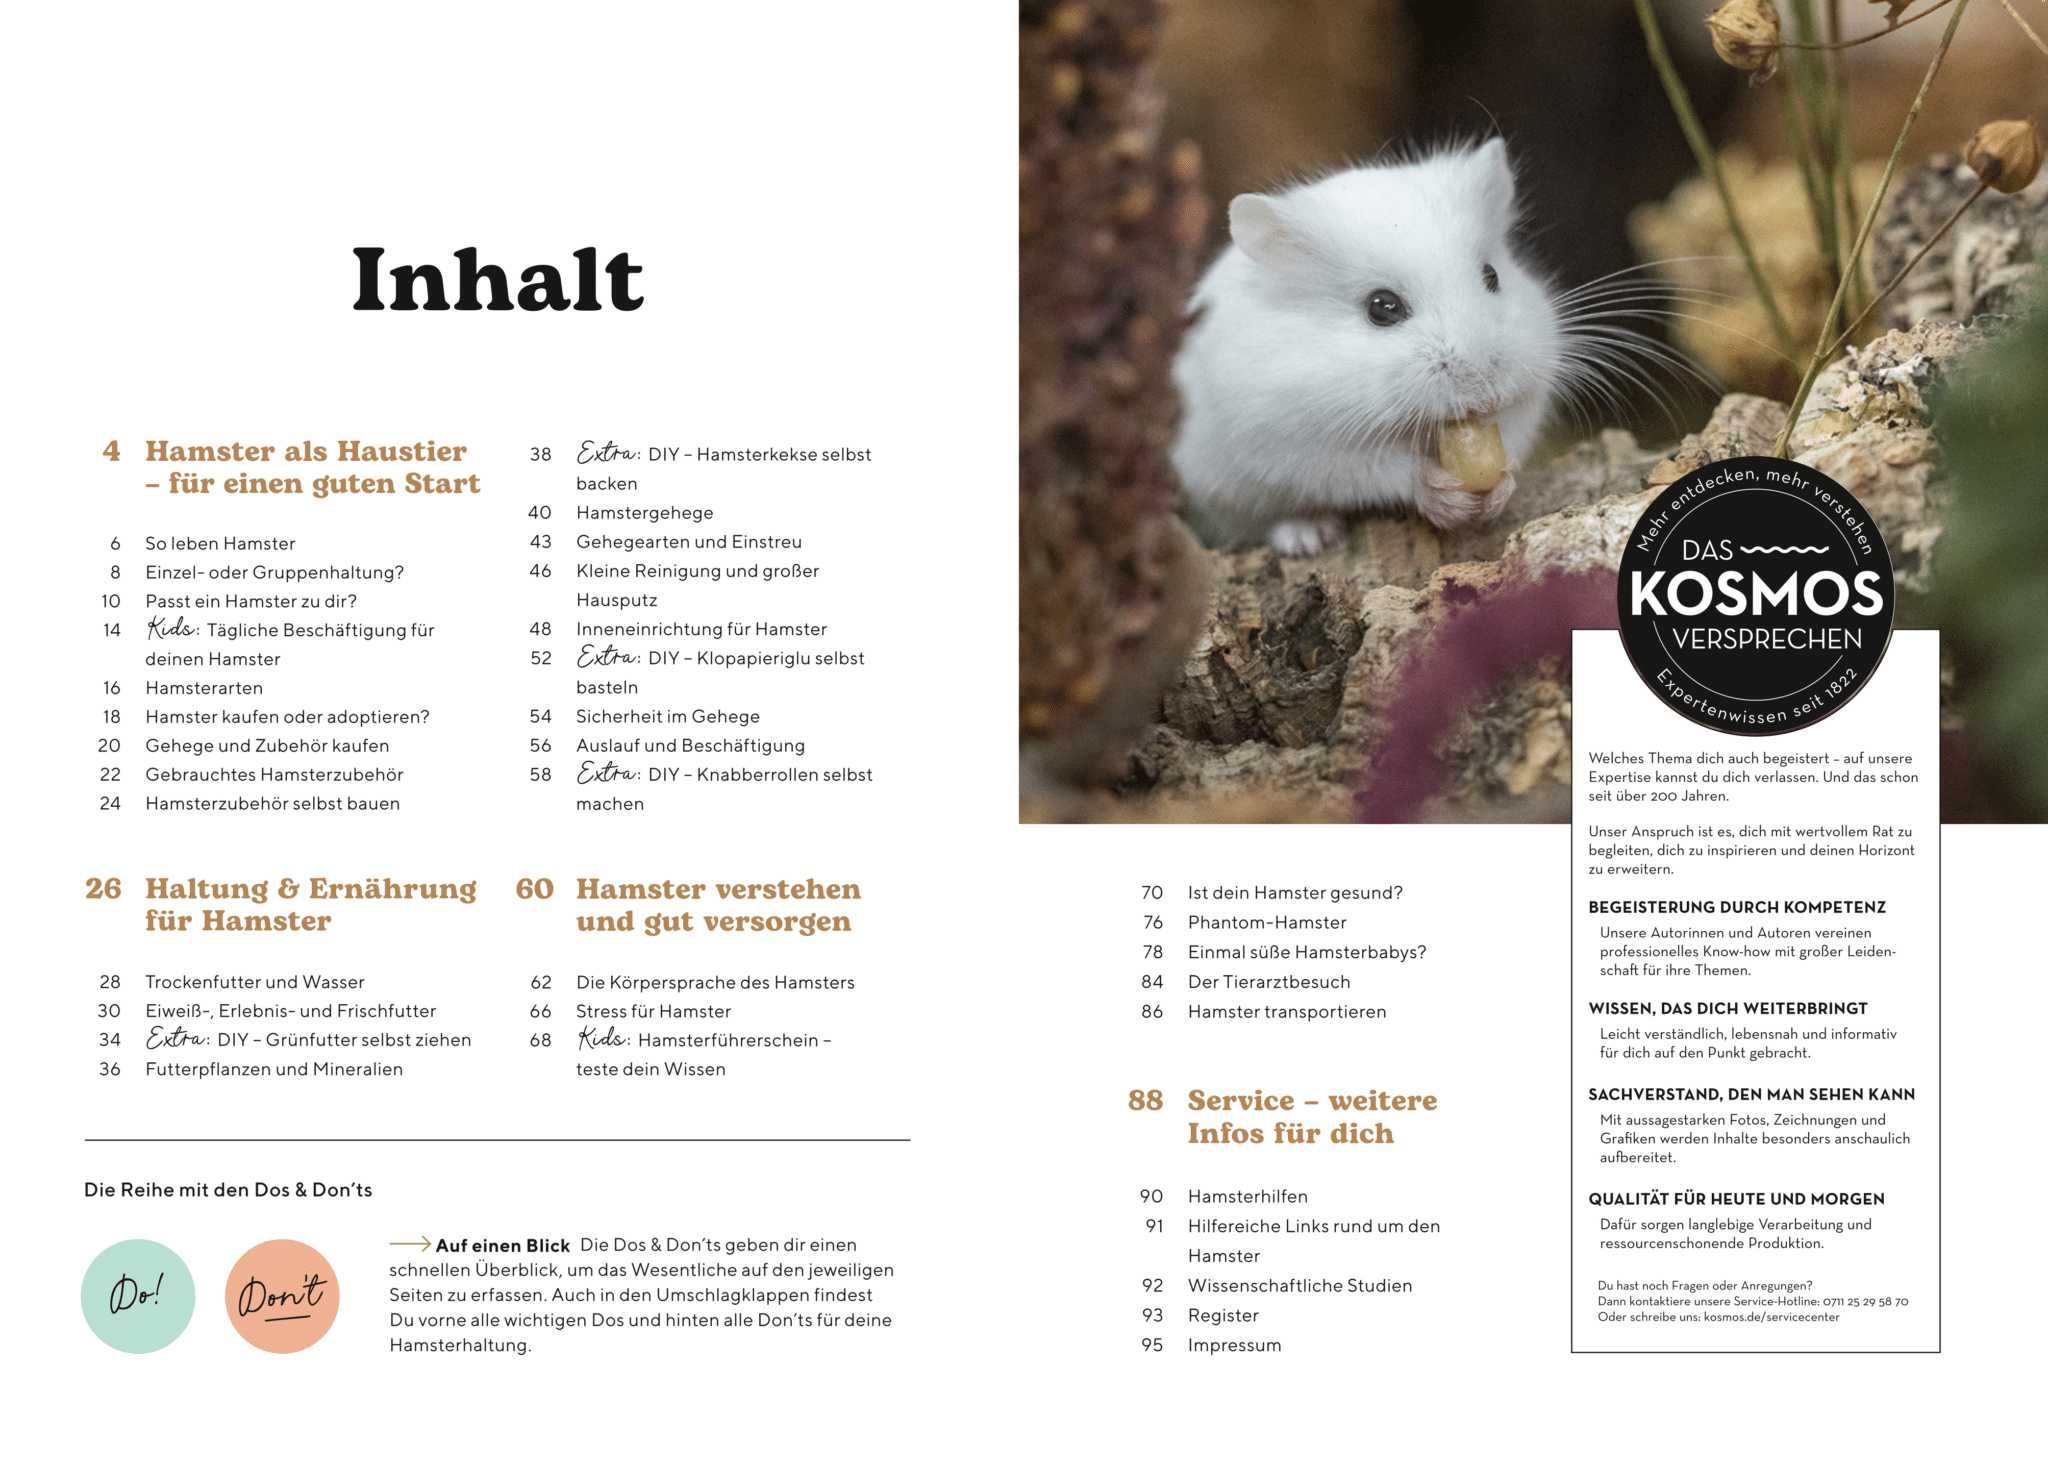 Inhaltsverzeichnis des Buchs "Hamster: So geht es deinem Tier gut", geschrieben von der Hamsterhilfe Südwest